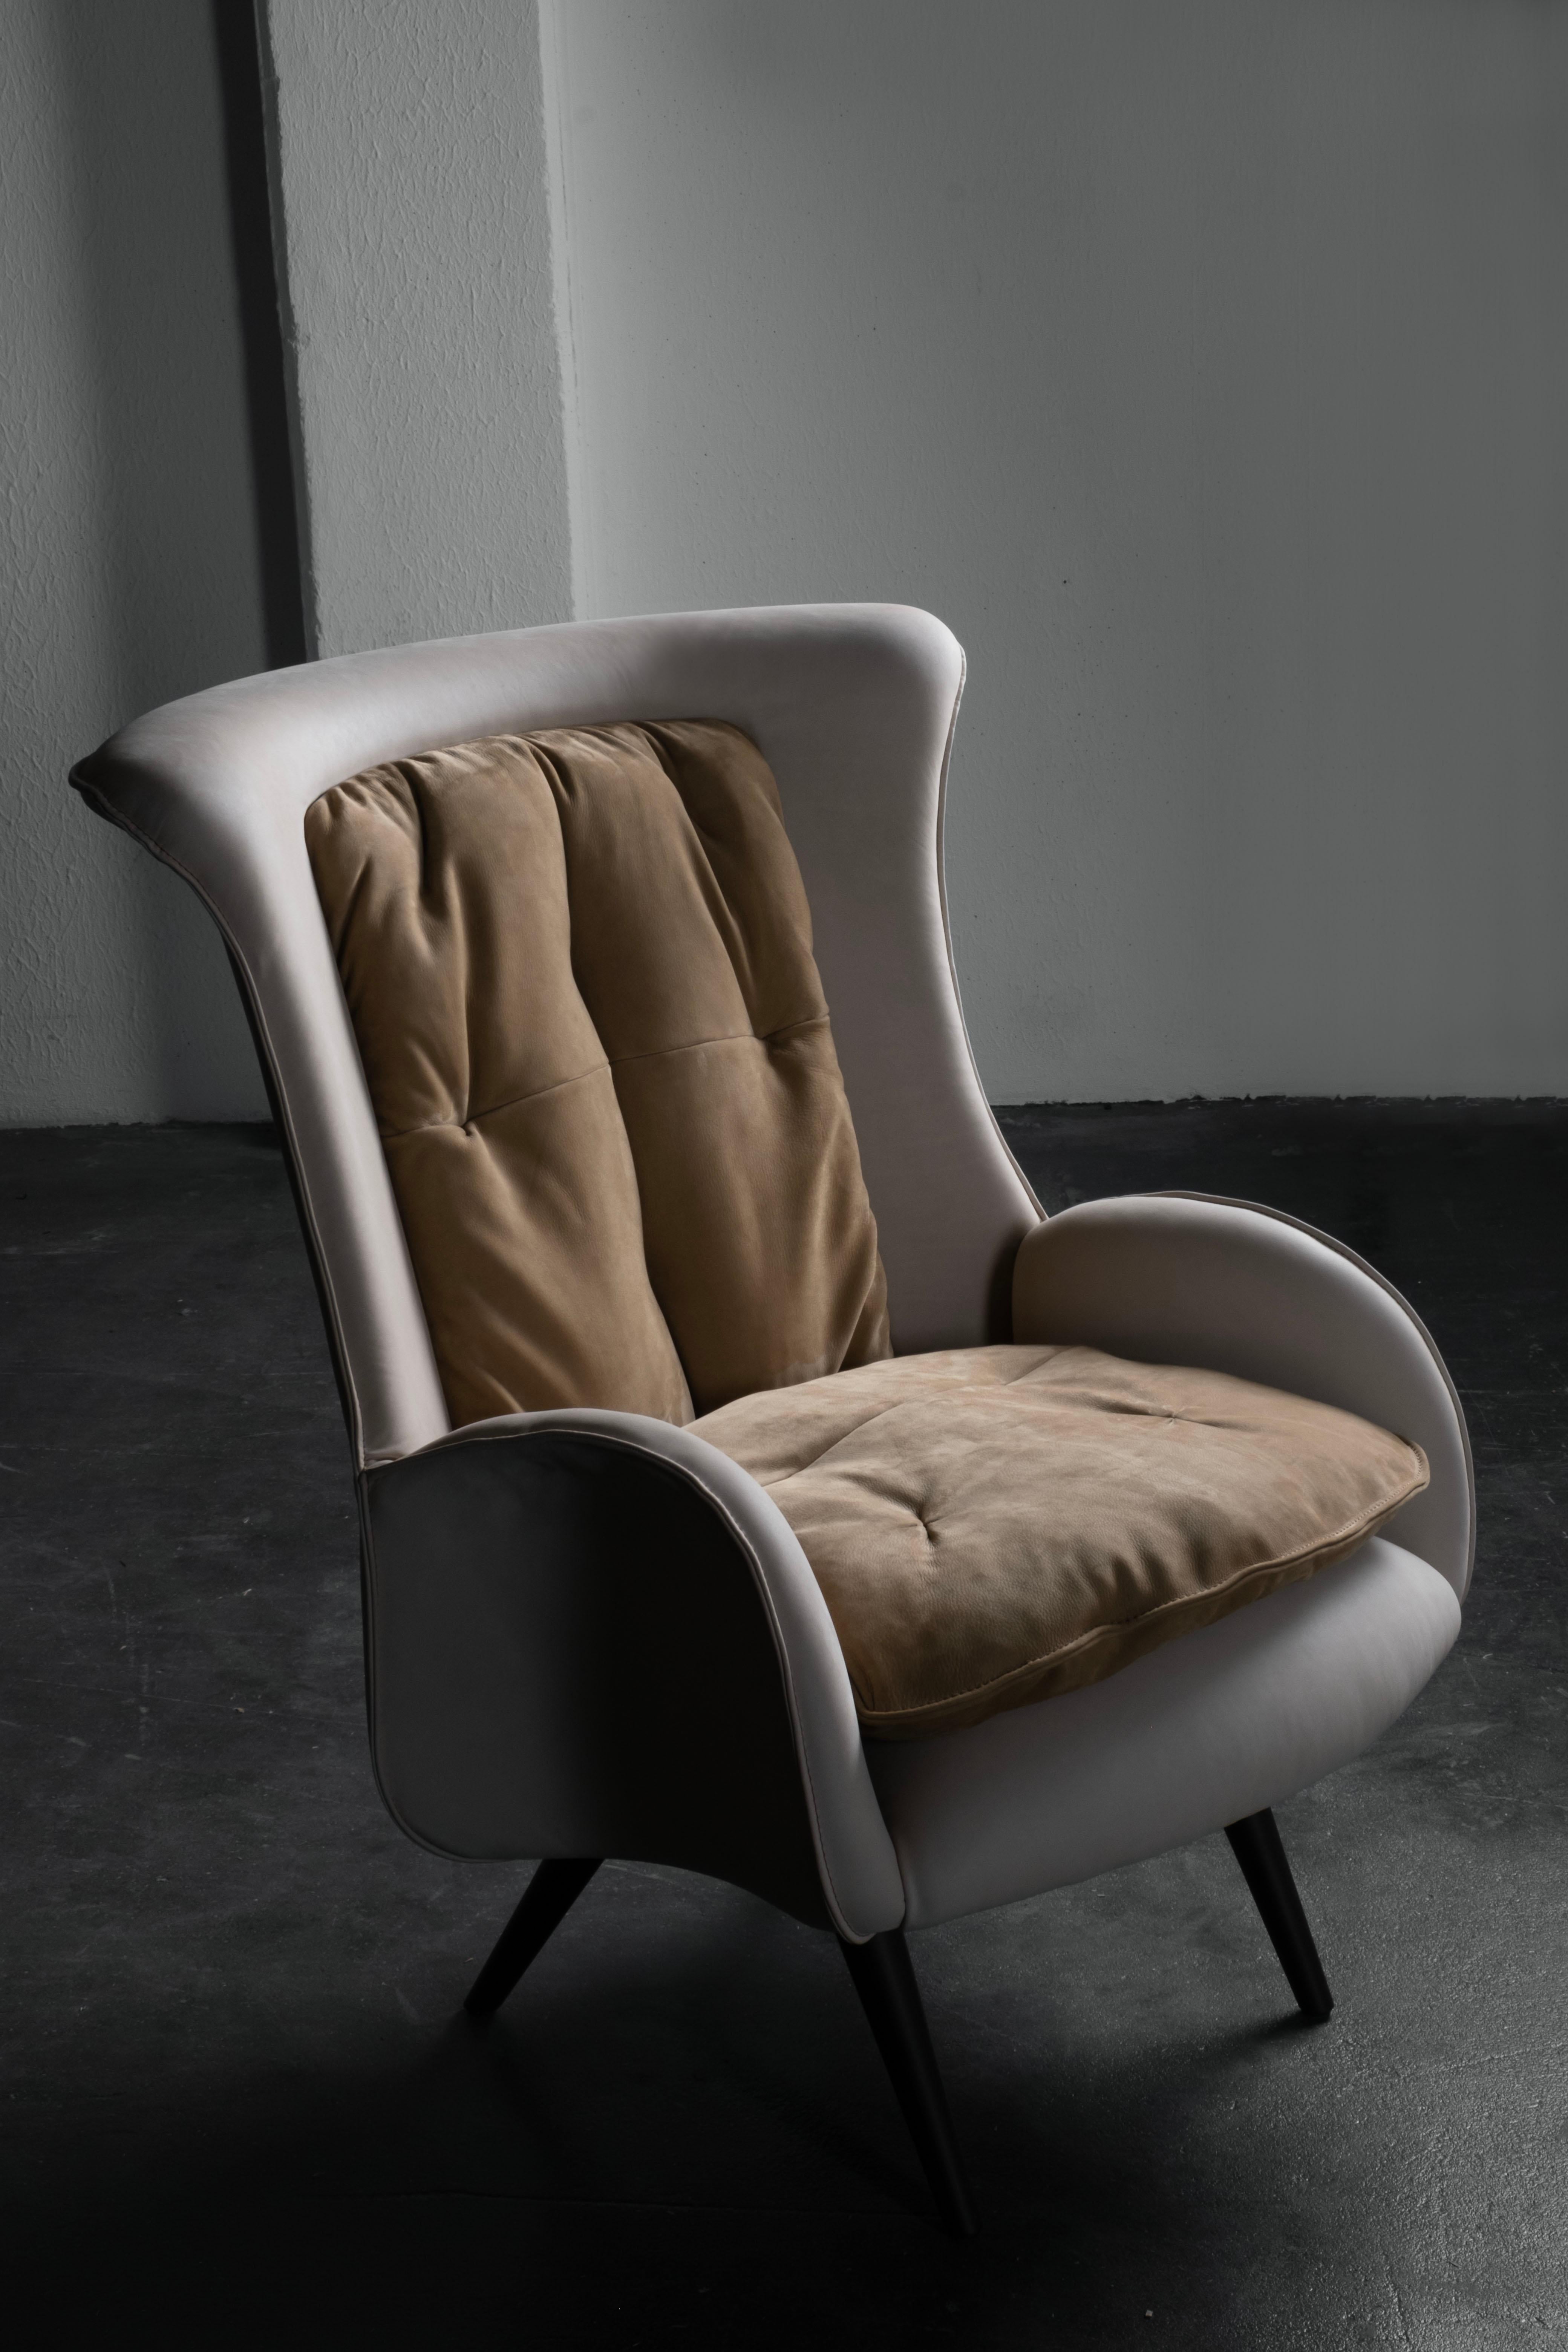 Barão Lounge Chair, Contemporary Collection, handgefertigt in Portugal - Europa von Greenapple.

Der Lounge-Sessel Barão aus Leder ist von der sorgfältigen Handwerkskunst der Schuhmacher inspiriert. Mit italienischem Leder gepolstert und mit